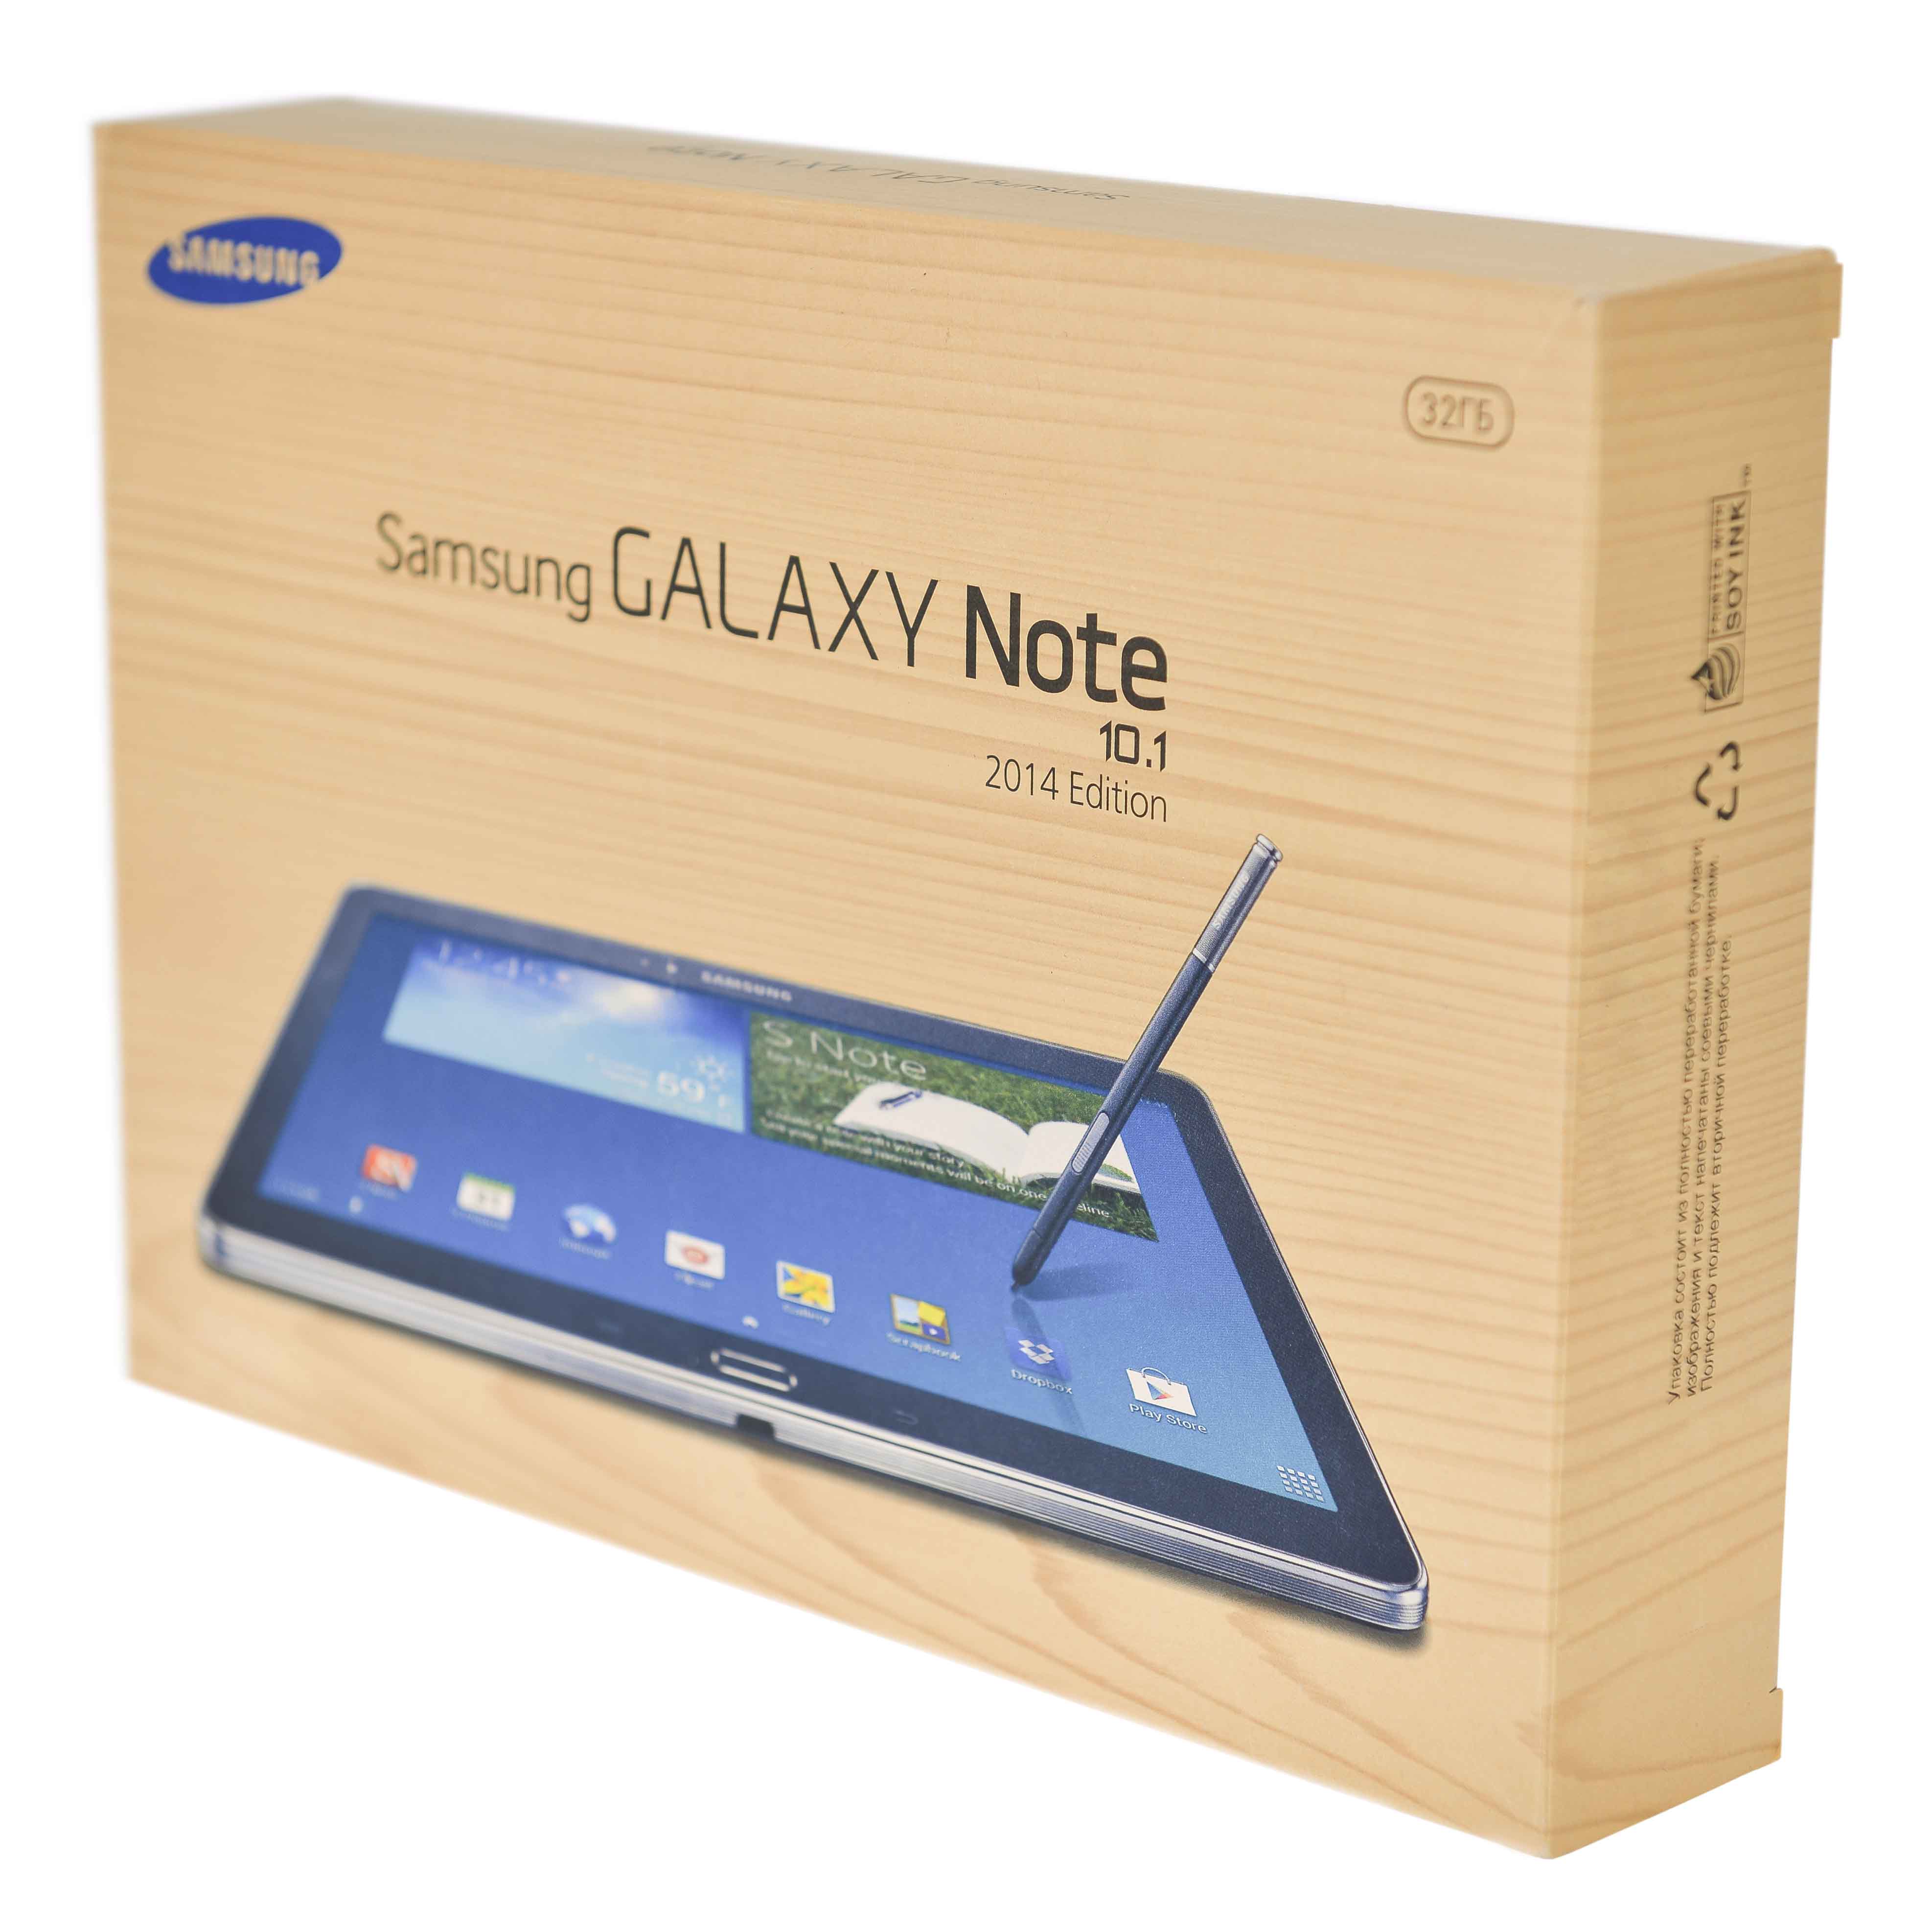 Galaxy note 2014 edition. Samsung Galaxy Note 10.1 n8000. Galaxy Note 10 характеристики. Note 2014. Samsung Note 10.1 2014 Edition купить.